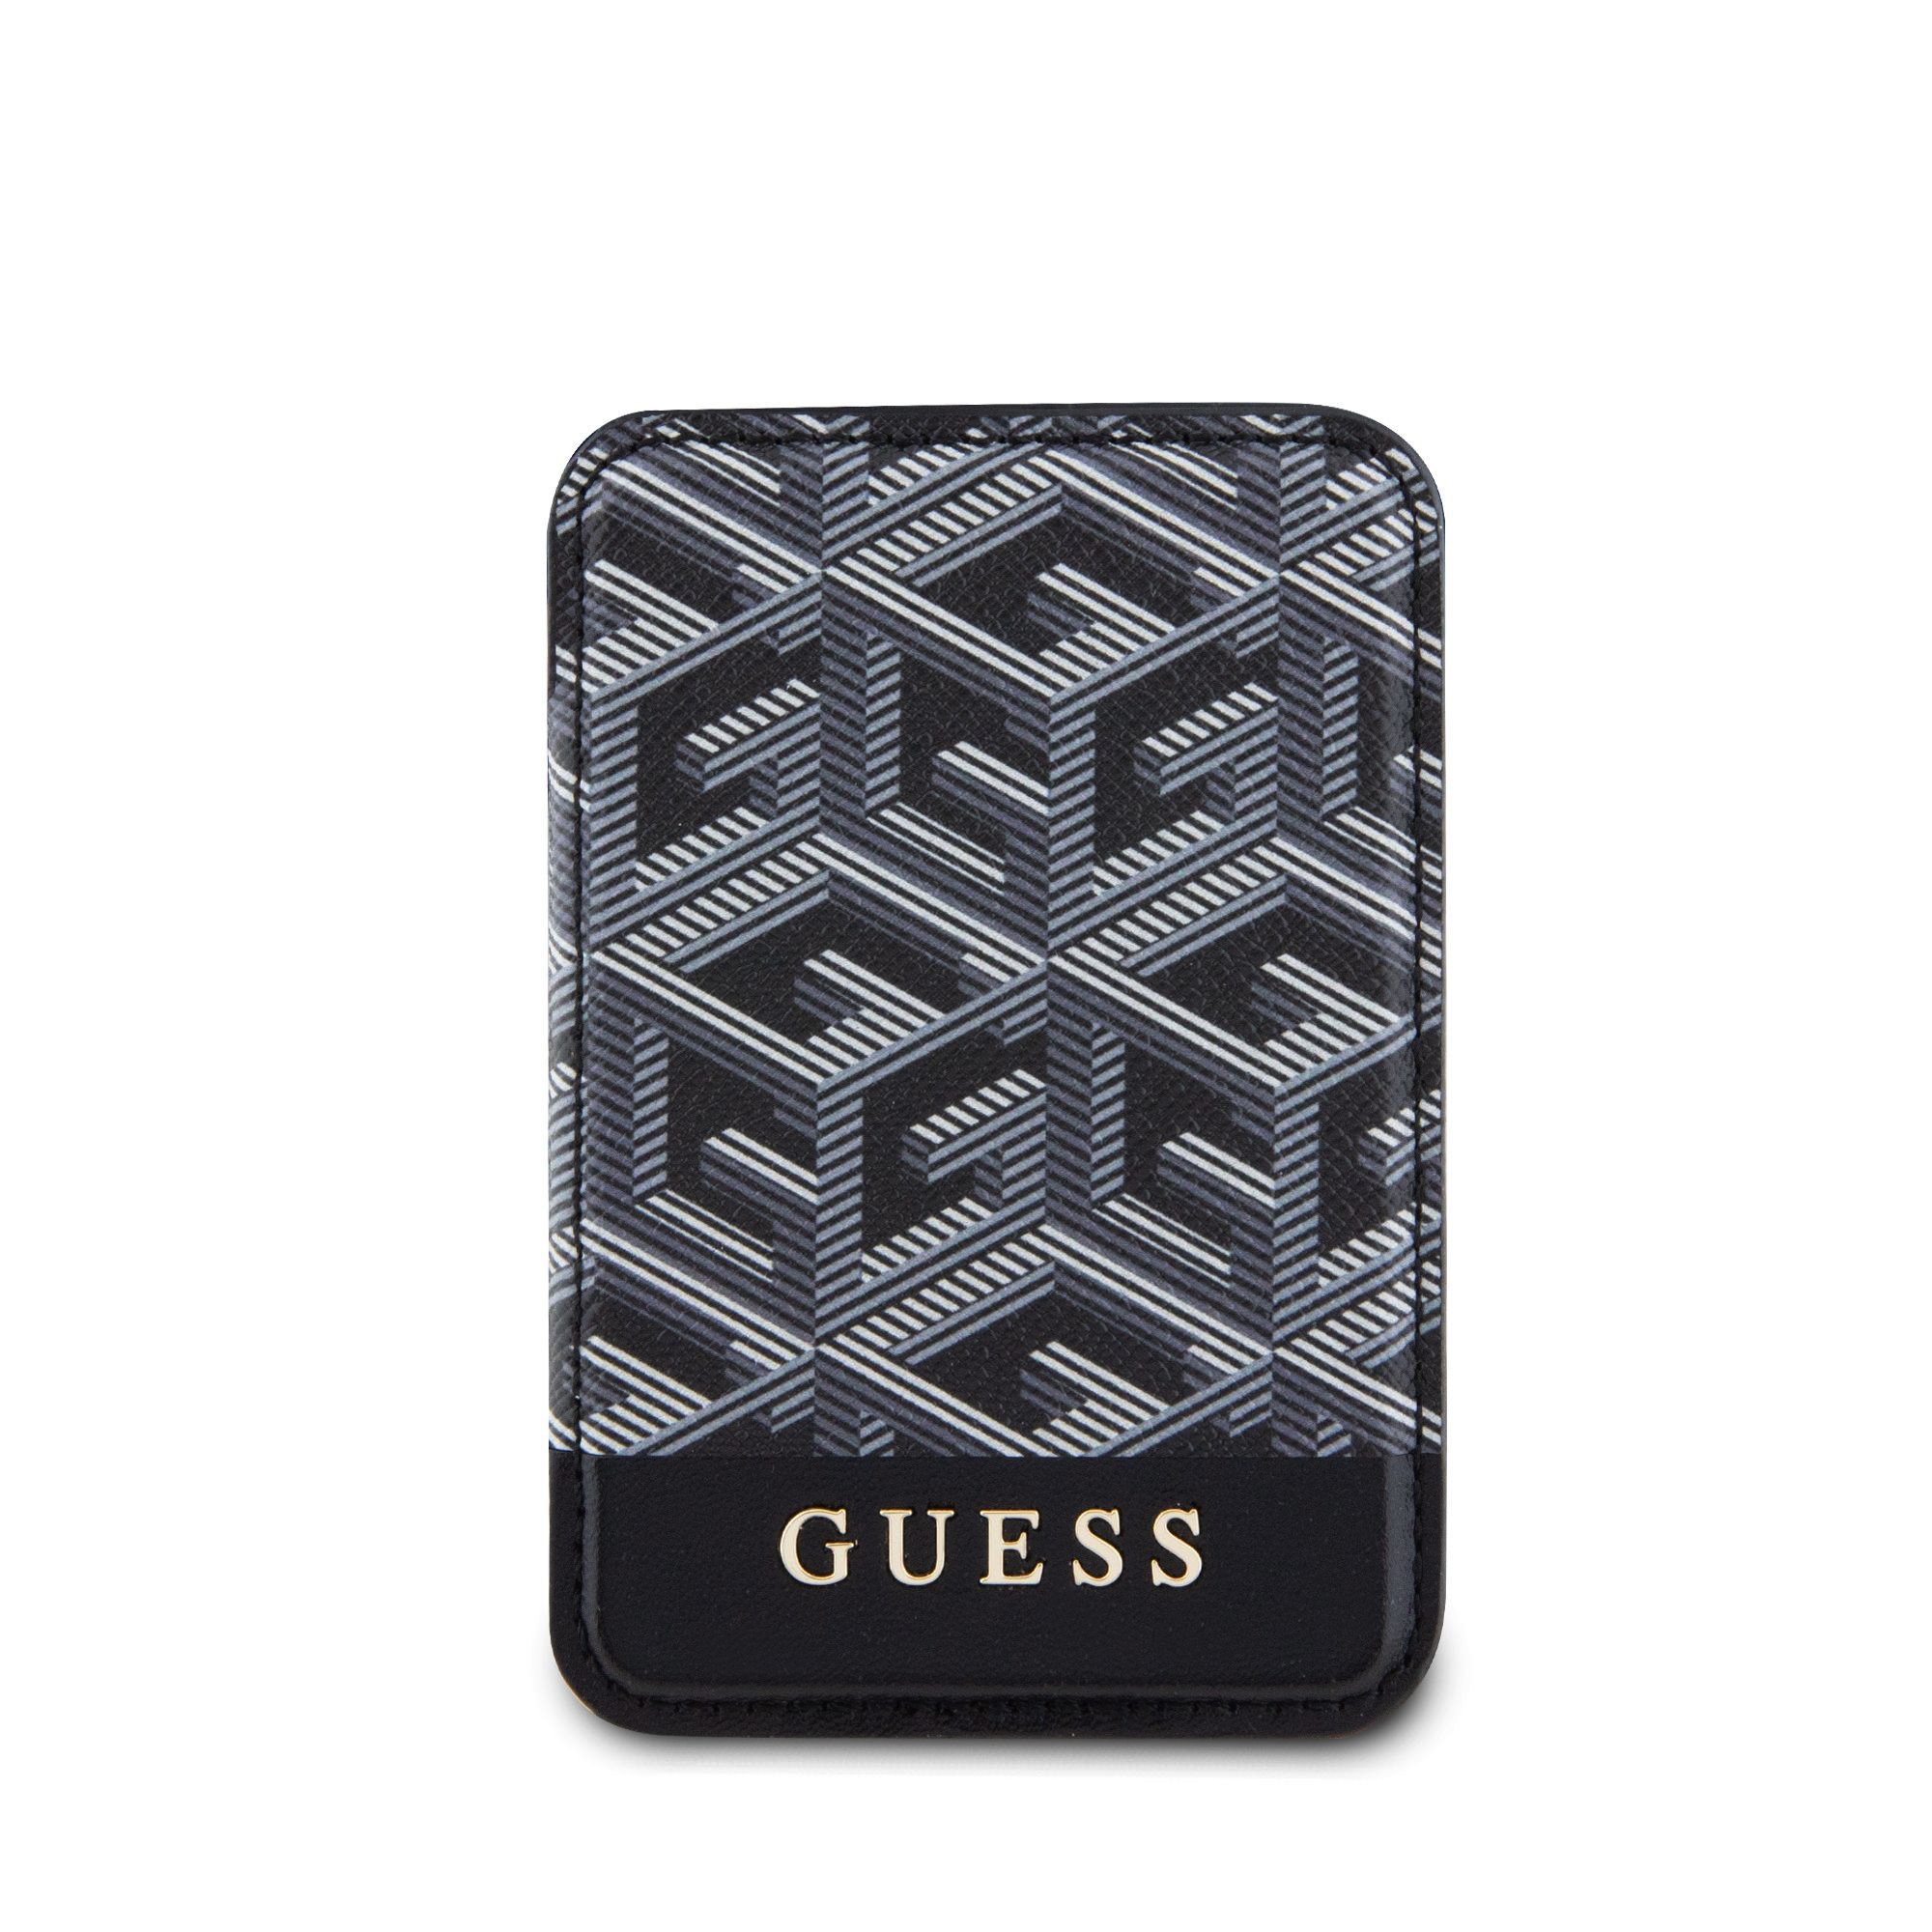 Guess G Cube MagSafe hátlapi kártyatartó fekete